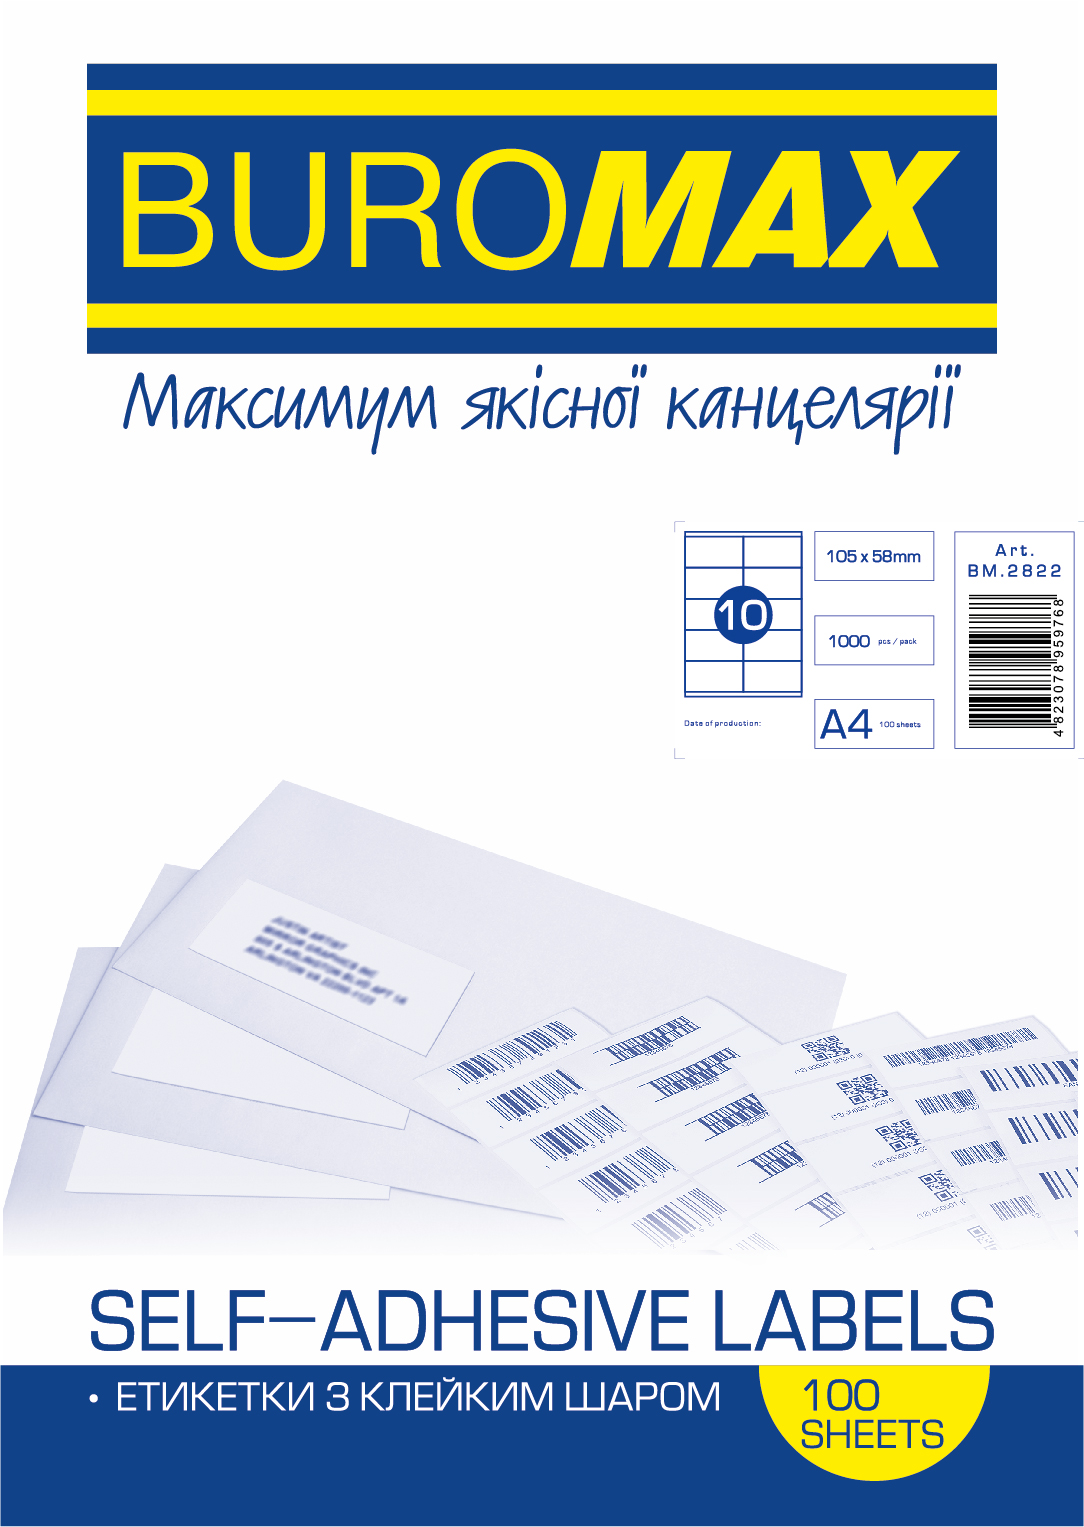 Набор этикеток самоклеящихся Buromax 100 листов А4 105х58 мм Белые Bm2822 фото отзывы 1307